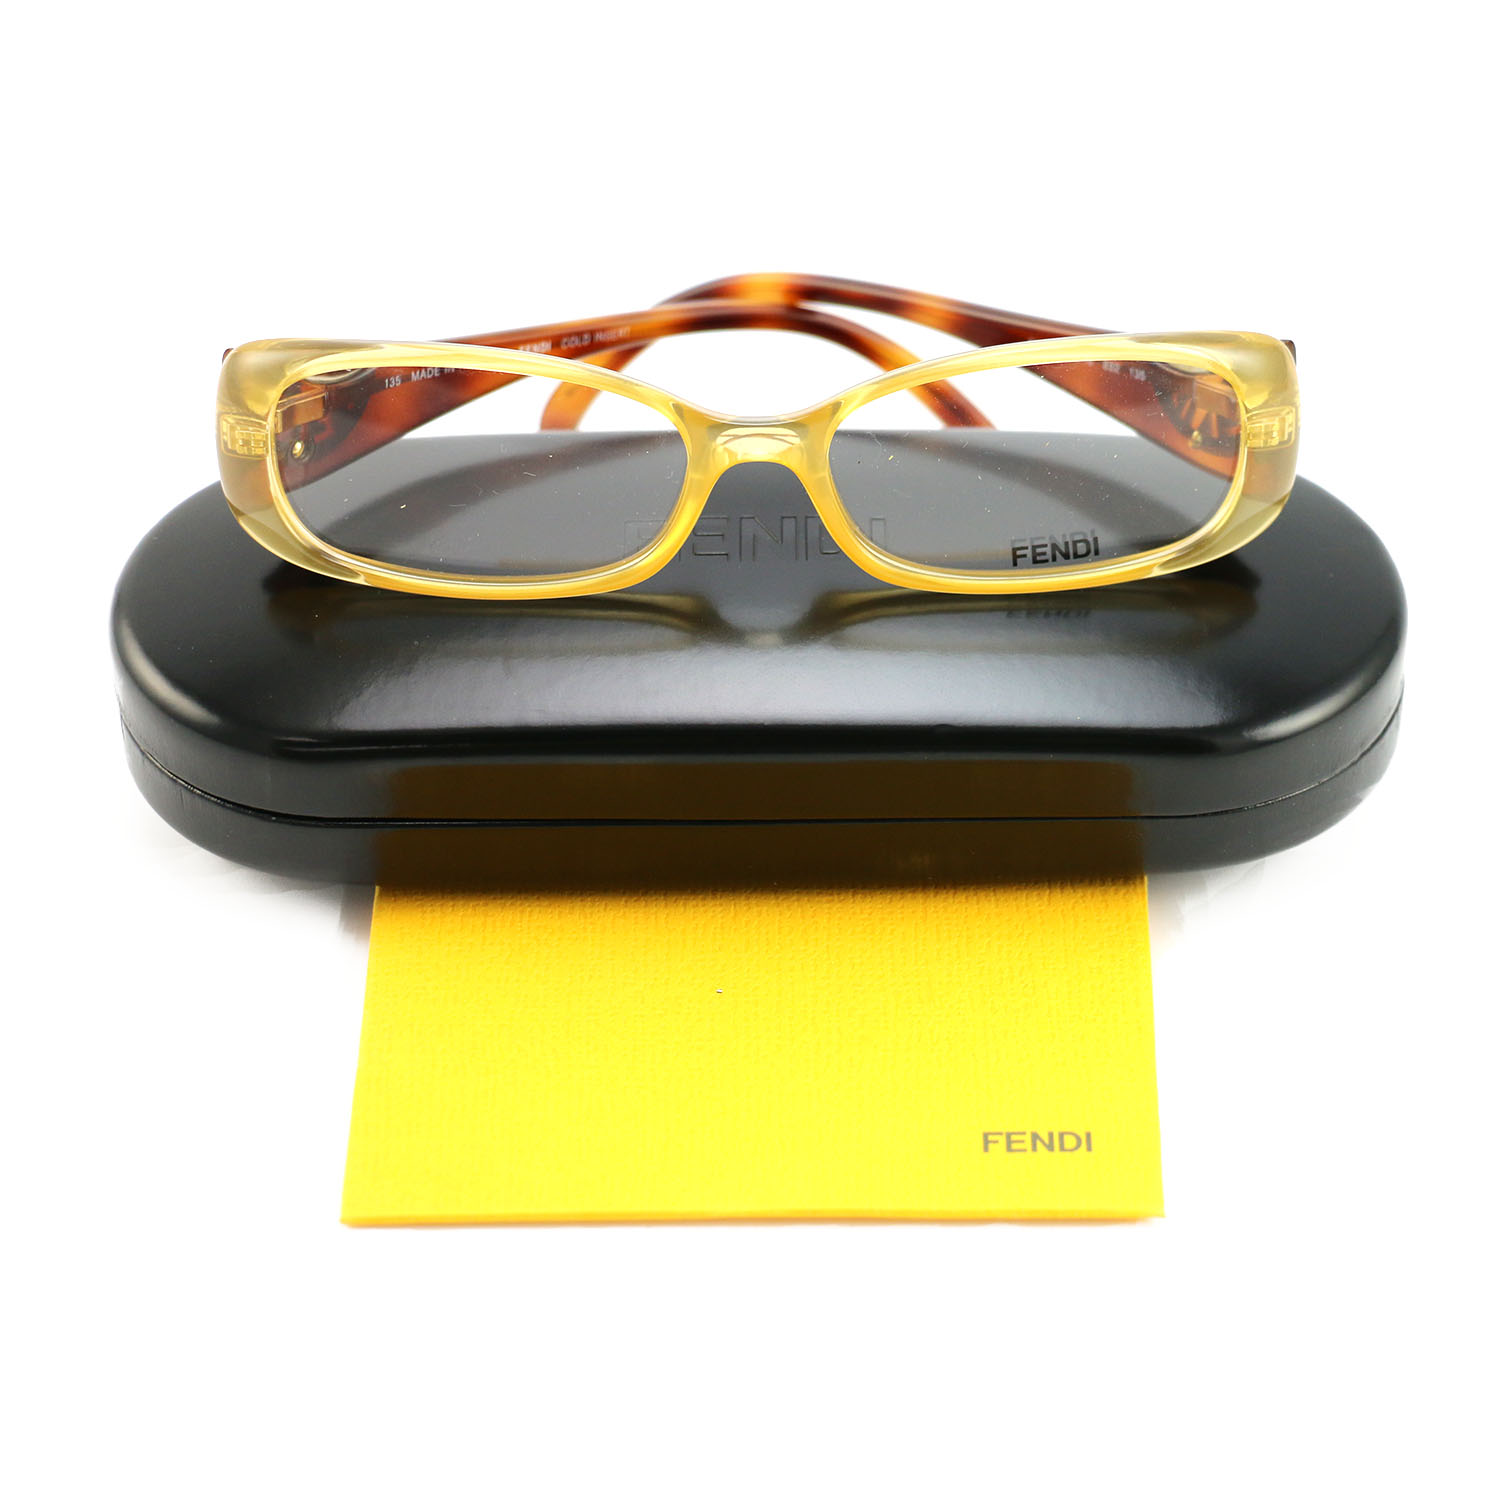 Fendi Women's Authentic Eyeglasses FF 847 832 Gold Frame Glasses 53 16 ...